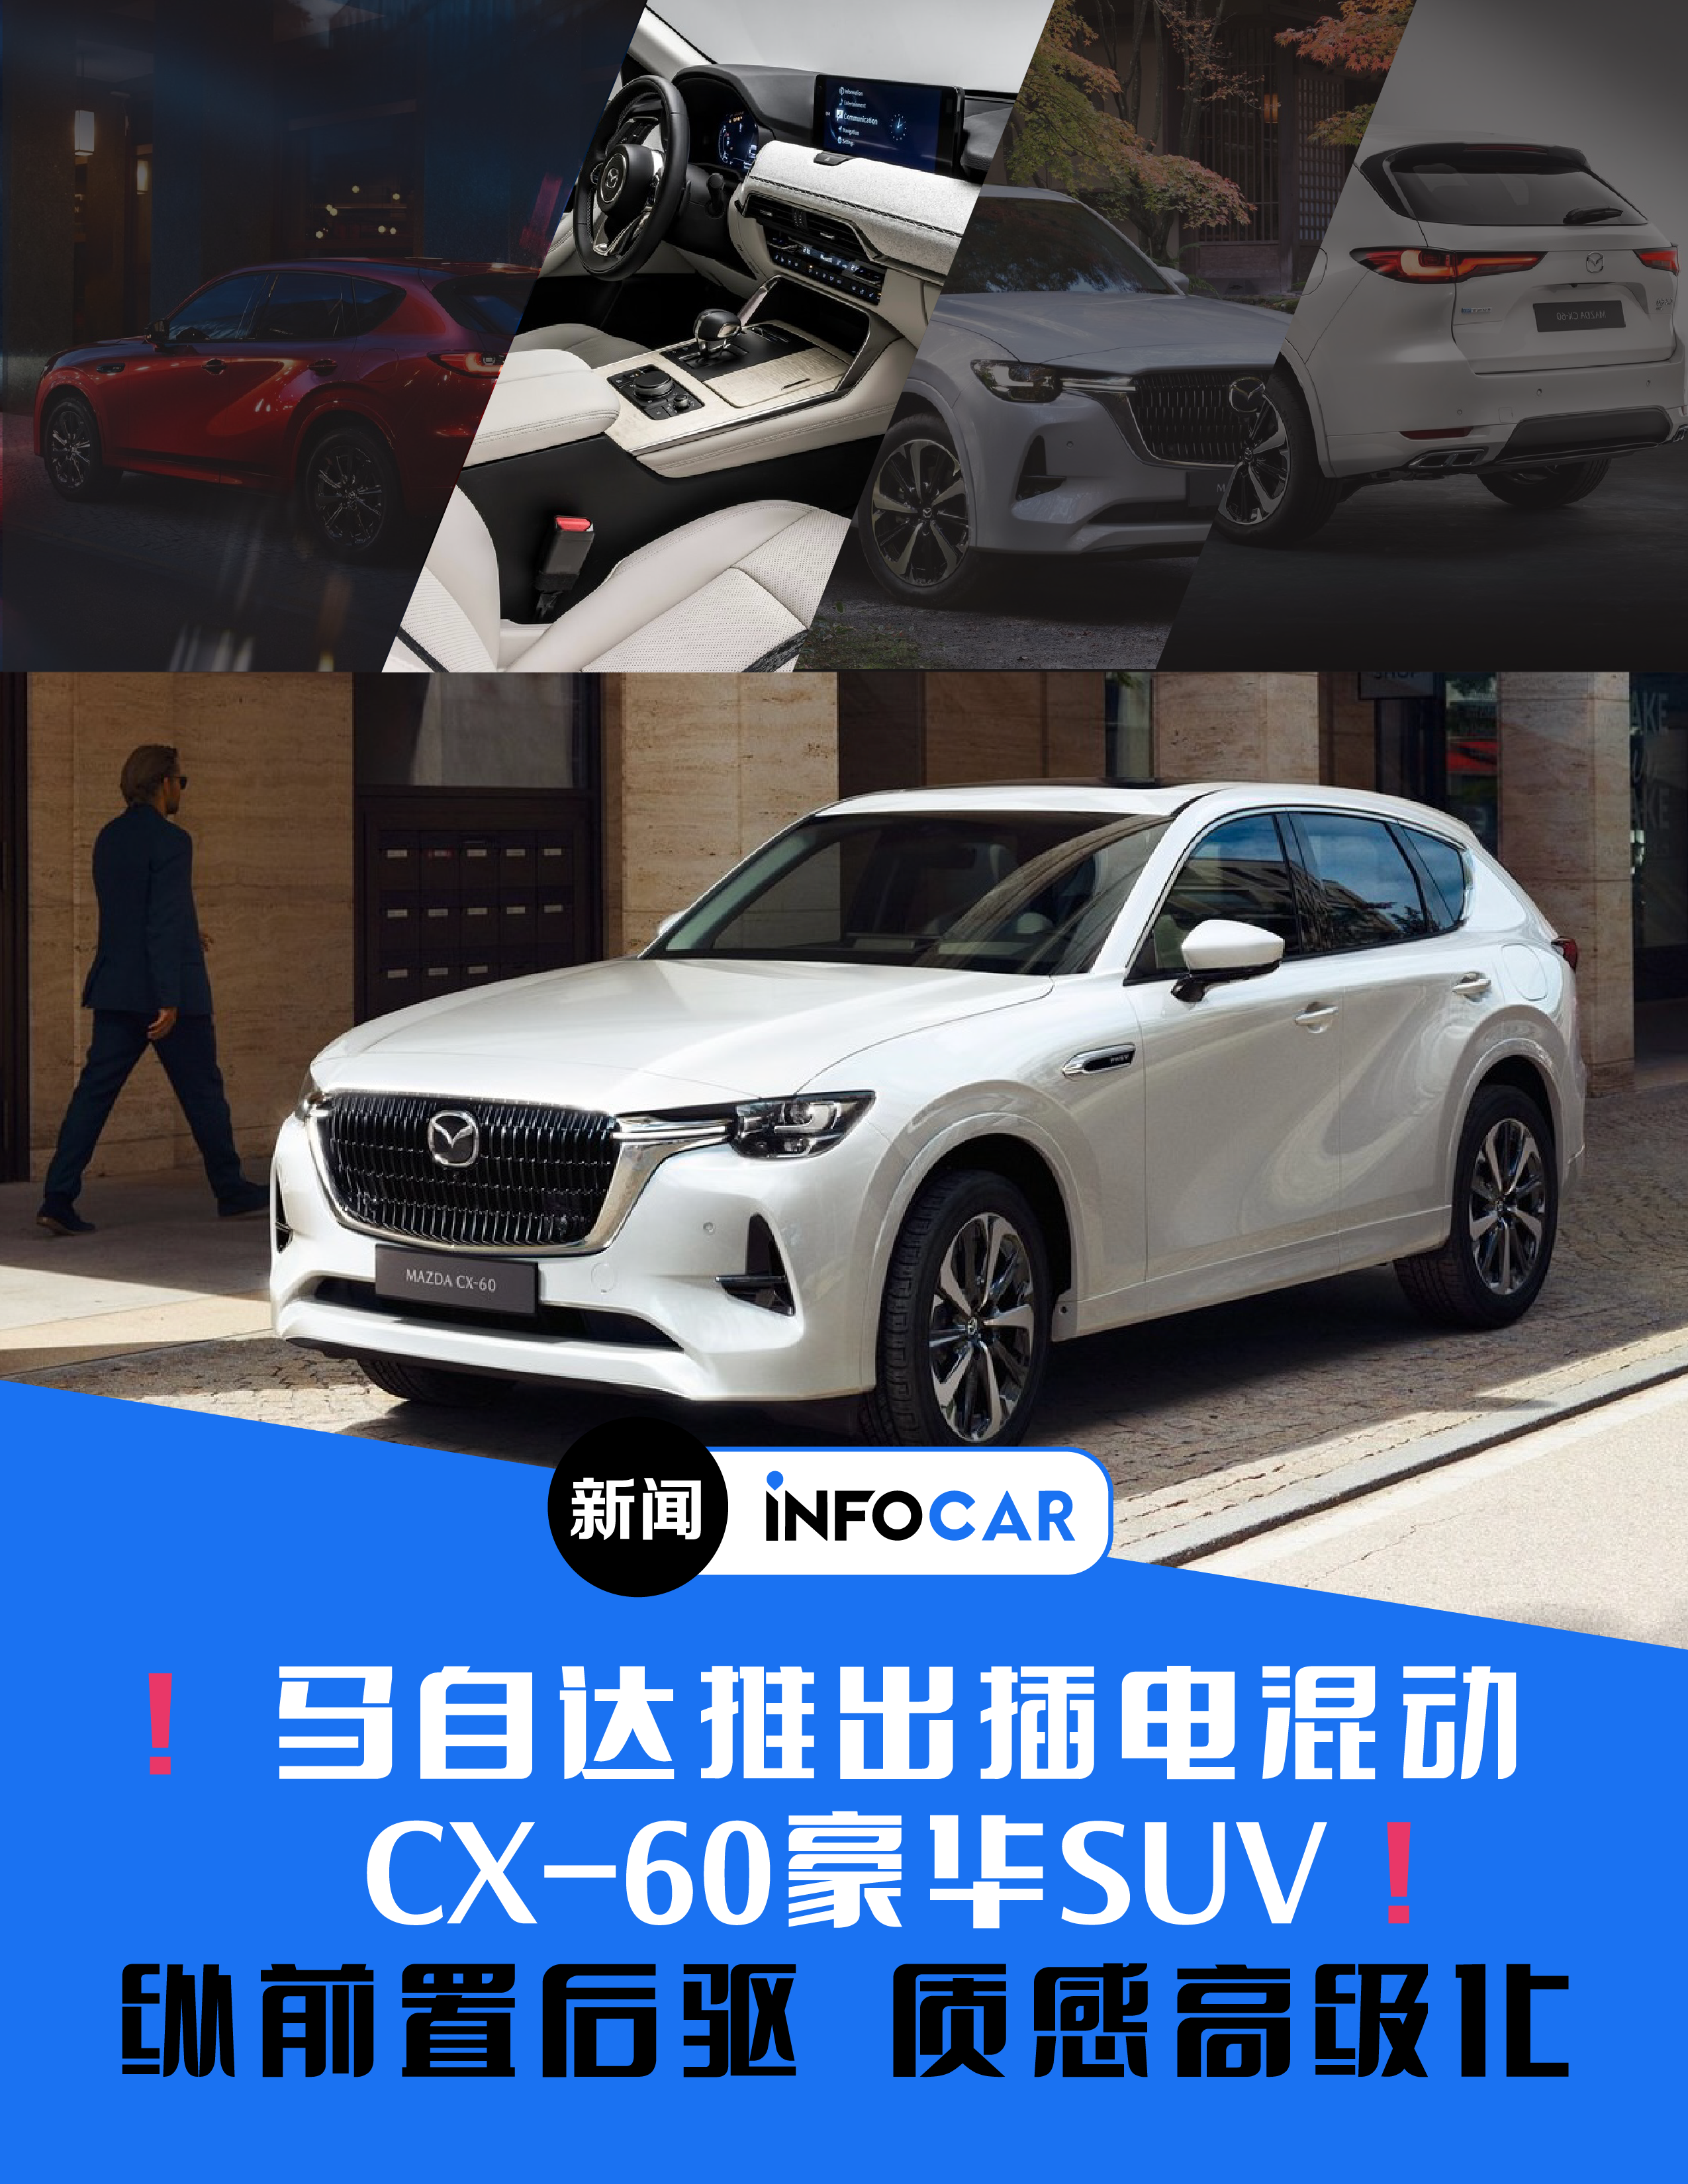 Infocar -INFOCAR新闻：马自达发布CX-60高质感SUV，插电混动前纵置引擎后驱平台，品牌高级化